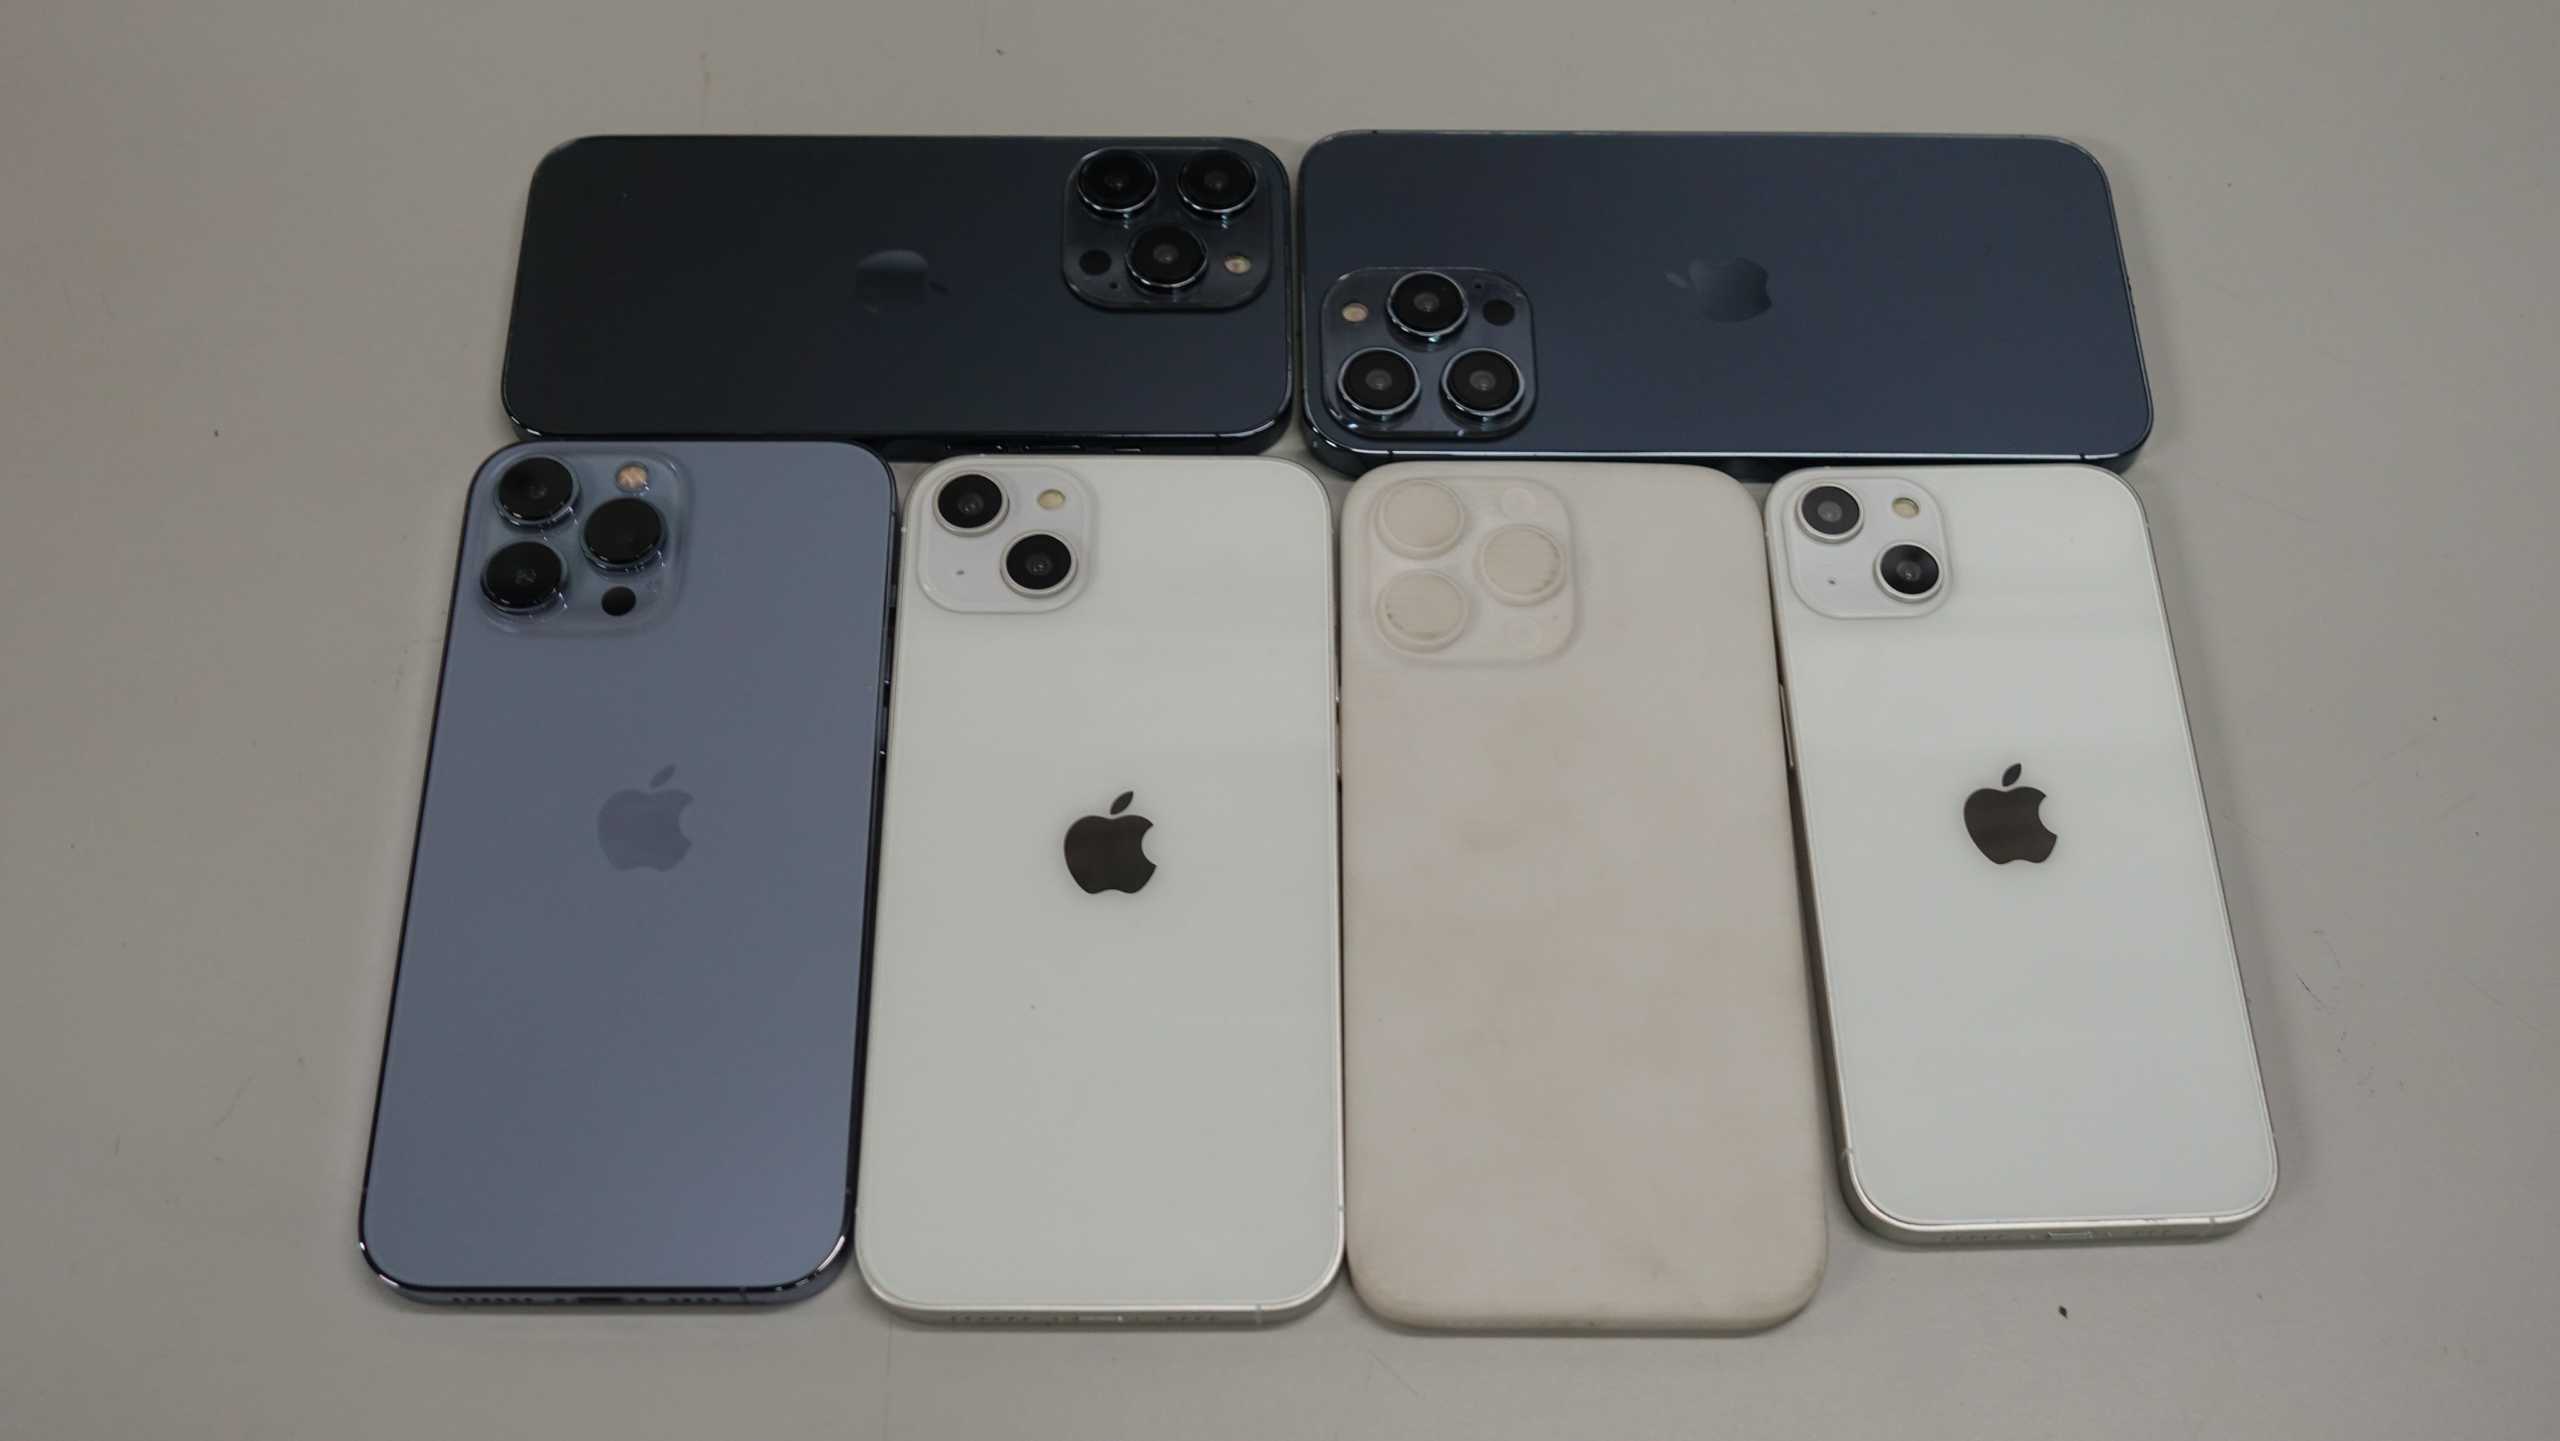 Uudet iPhone 14 -mallit esittelevät Applen odotetun muotoilun 5